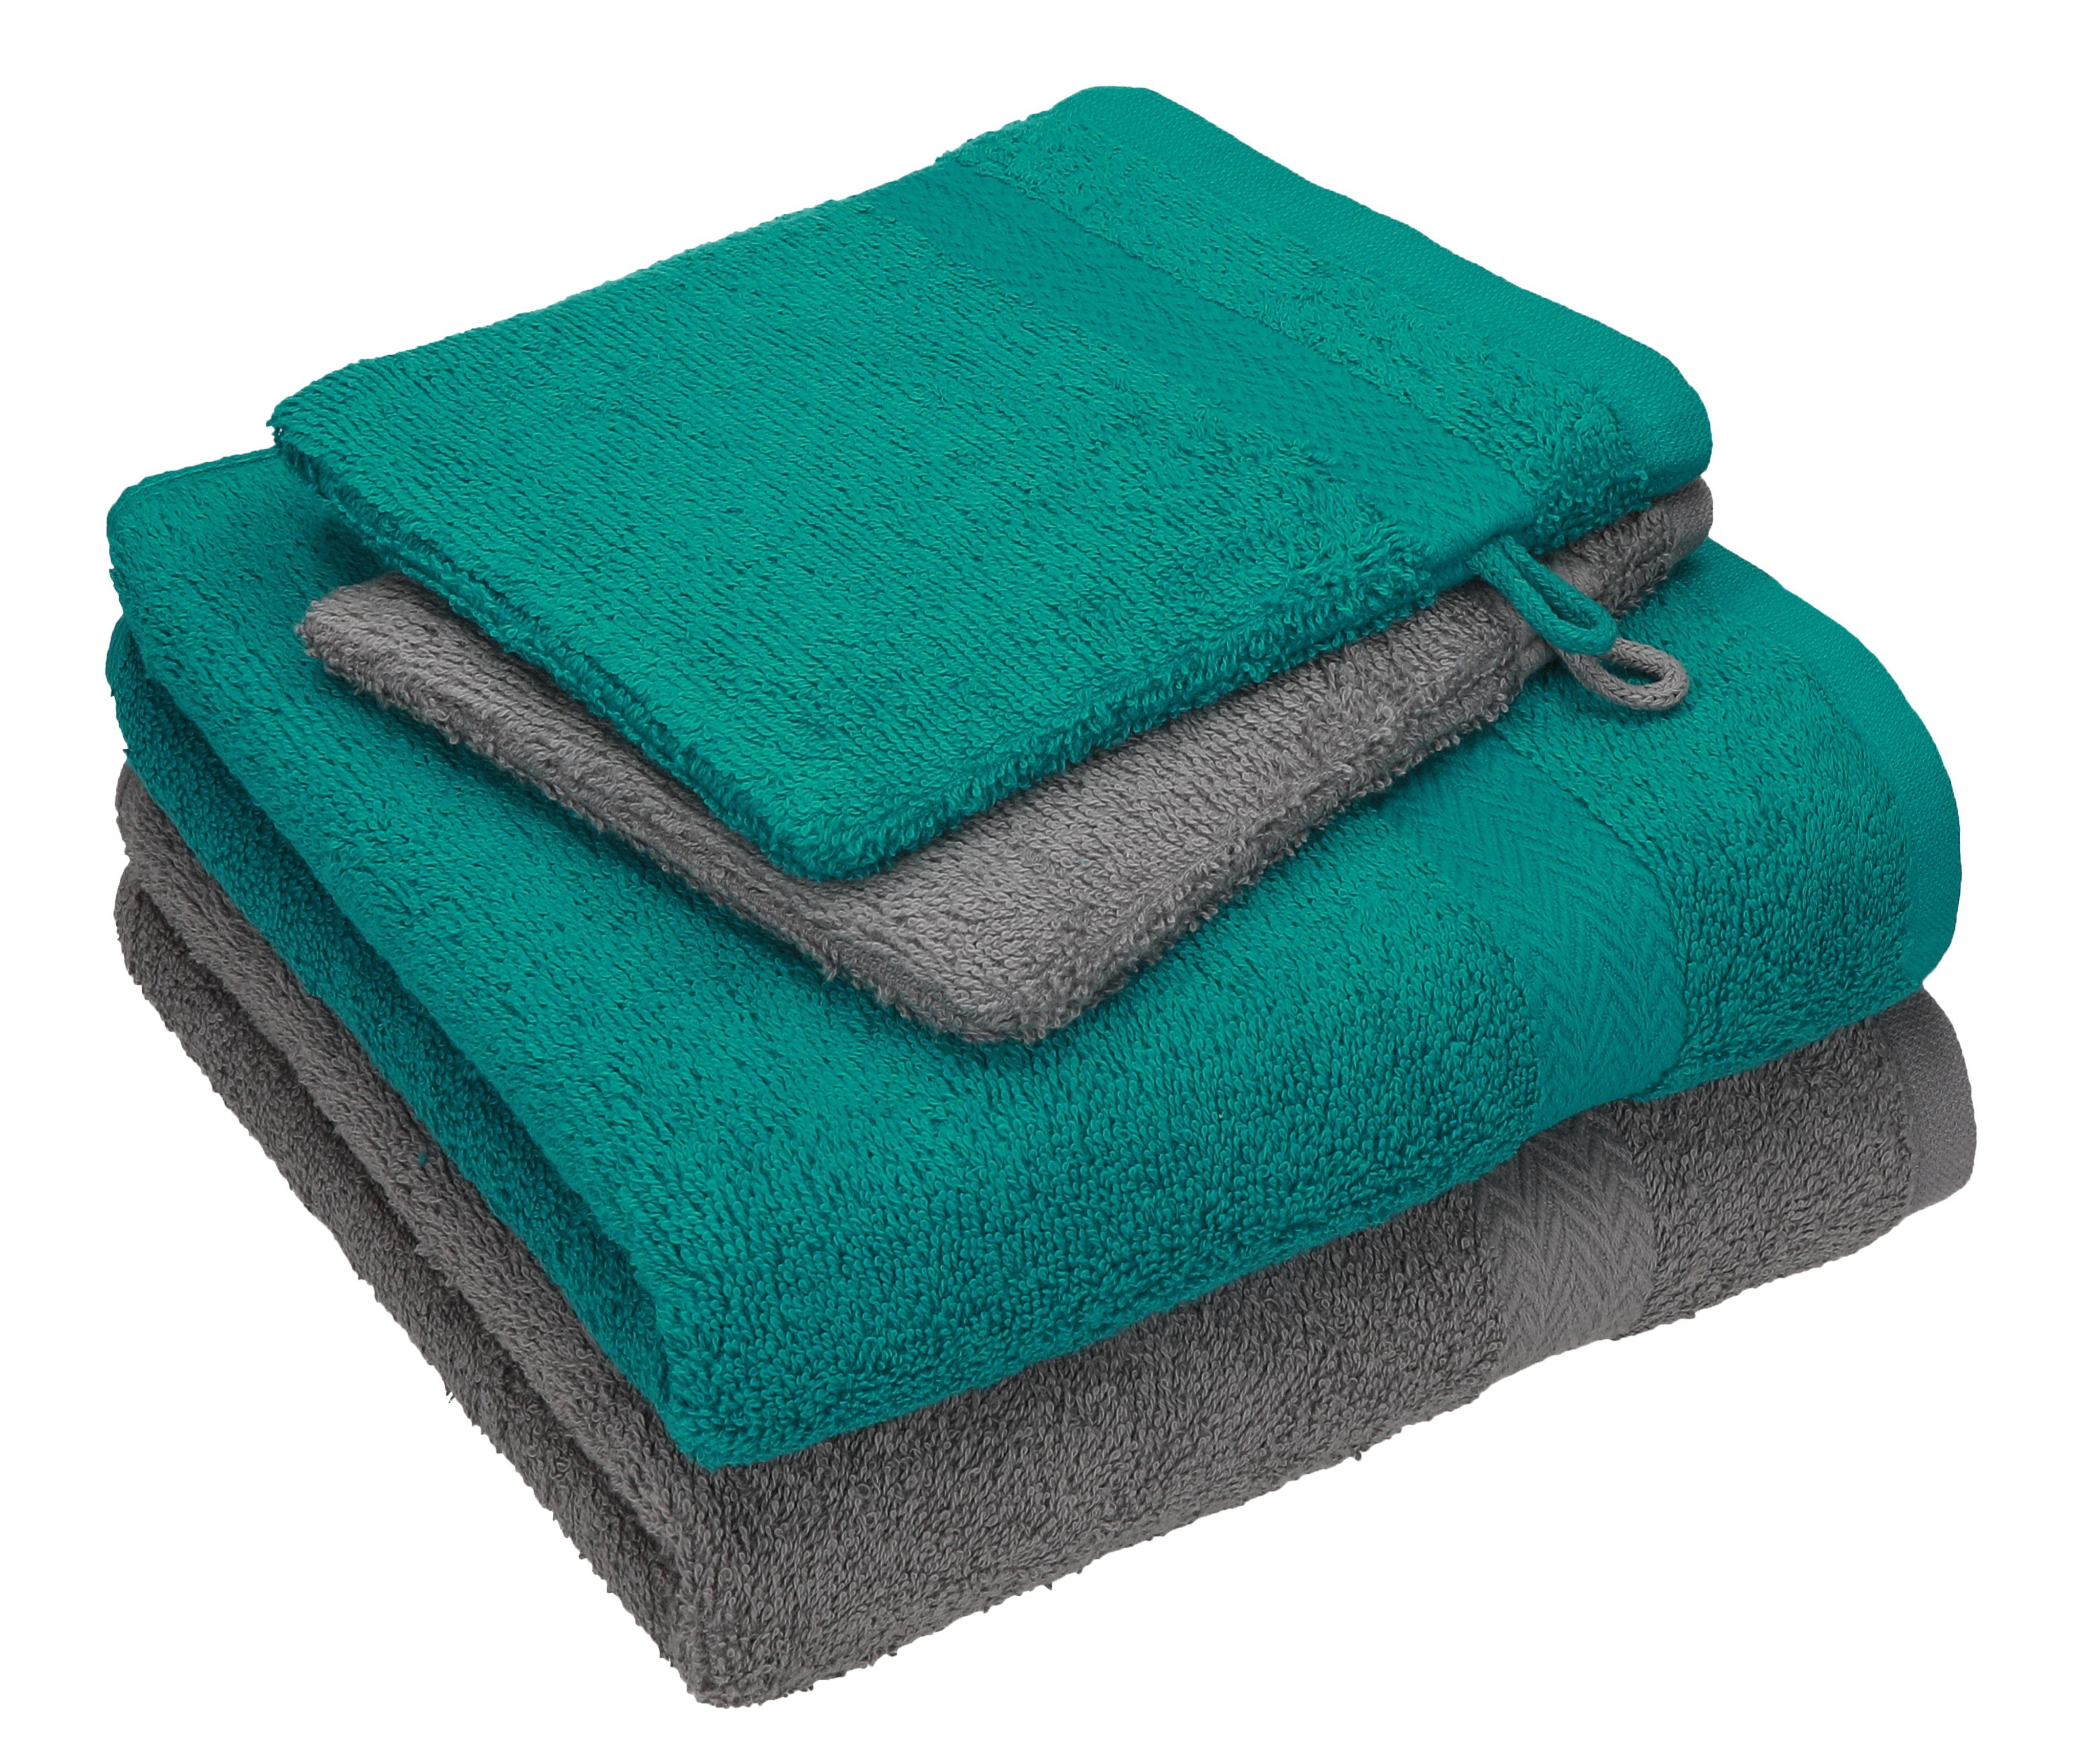 Betz Handtuch Set 4 Set 100% Pack 2 grau smaragdgrün Baumwolle 100% Handtücher Baumwolle - anthrazit Handtuch Happy 2 TLG. Waschhandschuhe